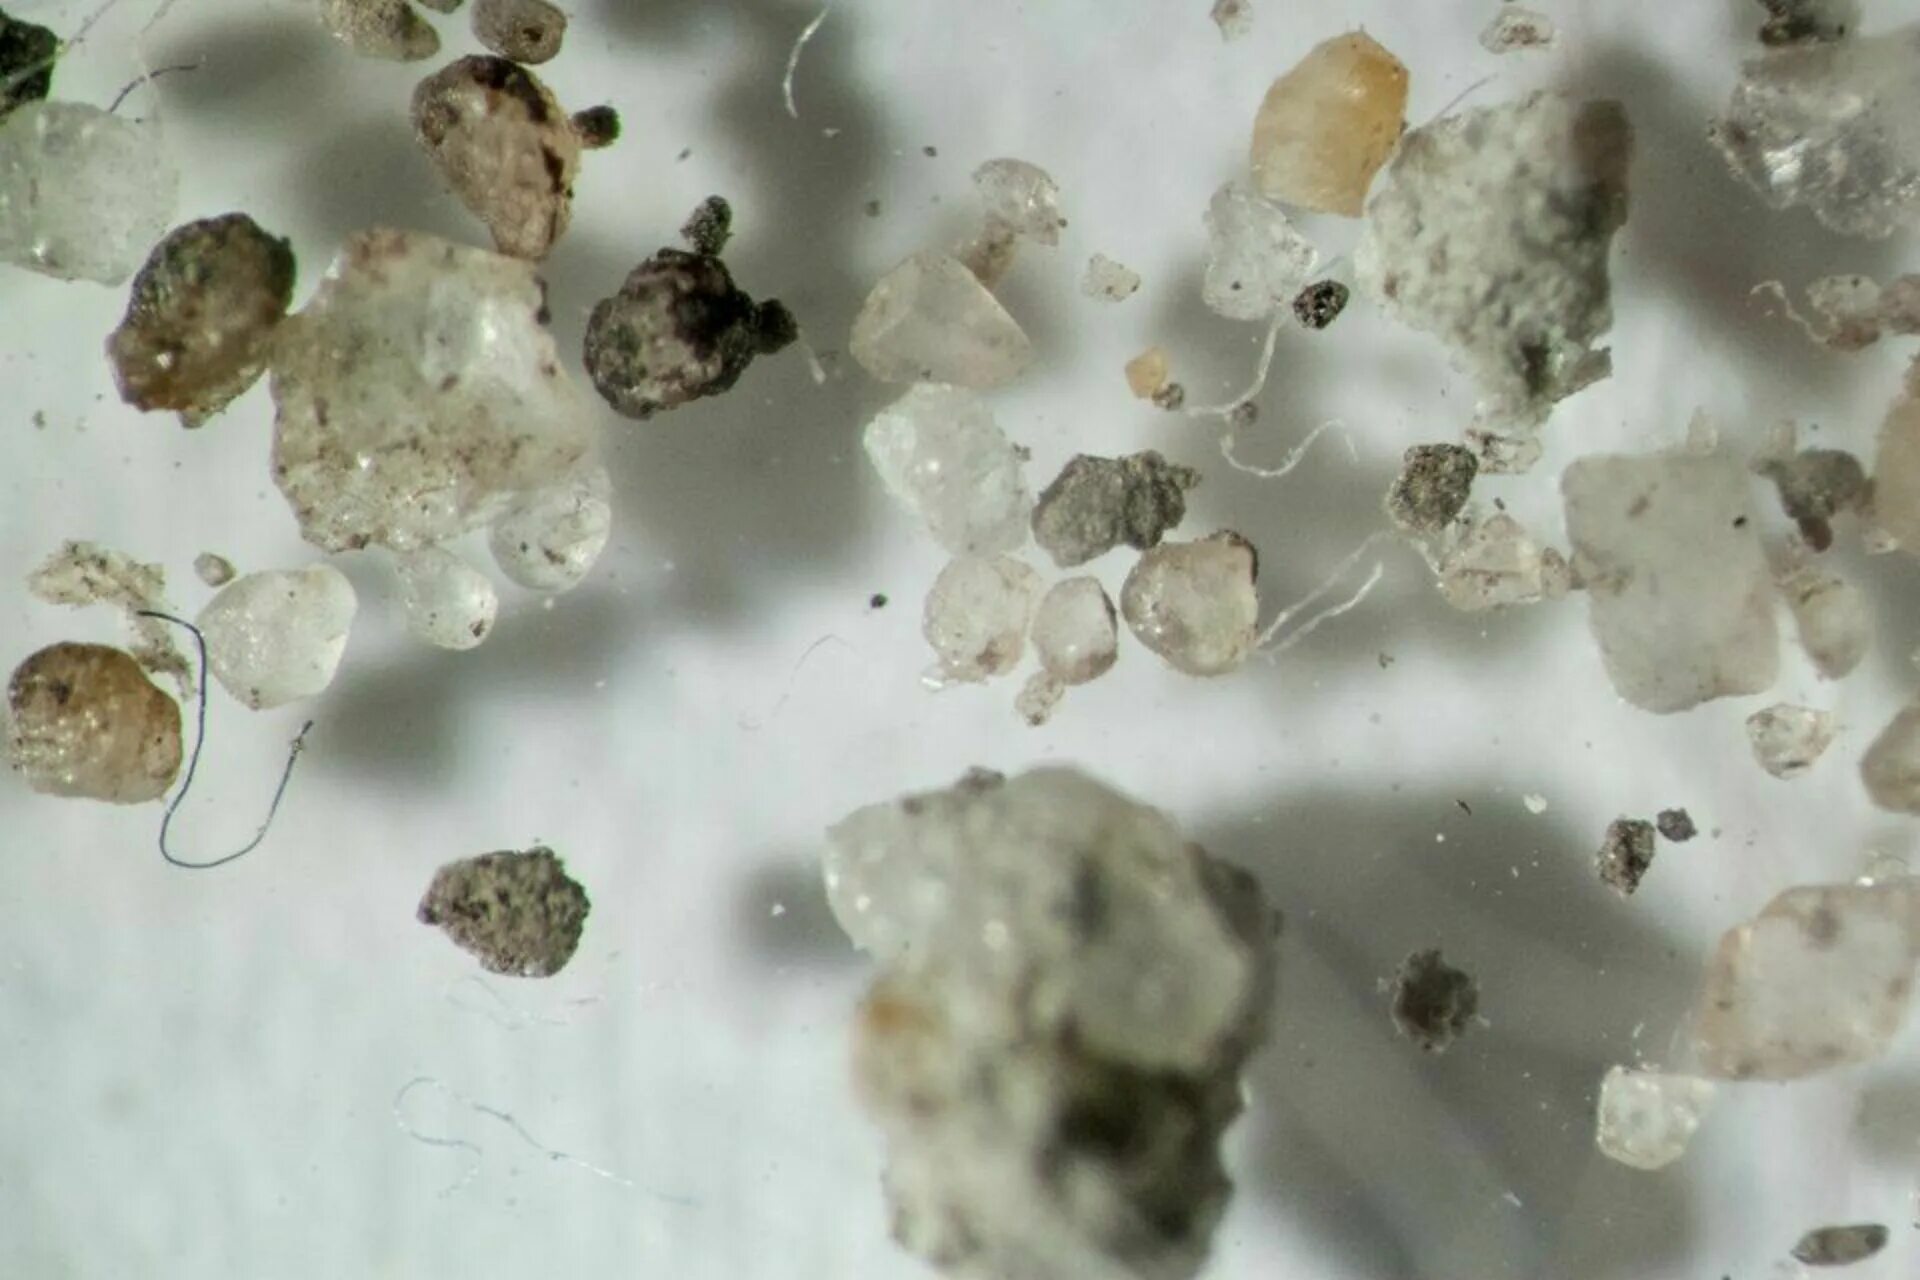 Домашняя пыль под микроскопом. Частички пыли под микроскопом. Мусор под микроскопом. Пыль увеличенная под микроскопом. Б г пыль